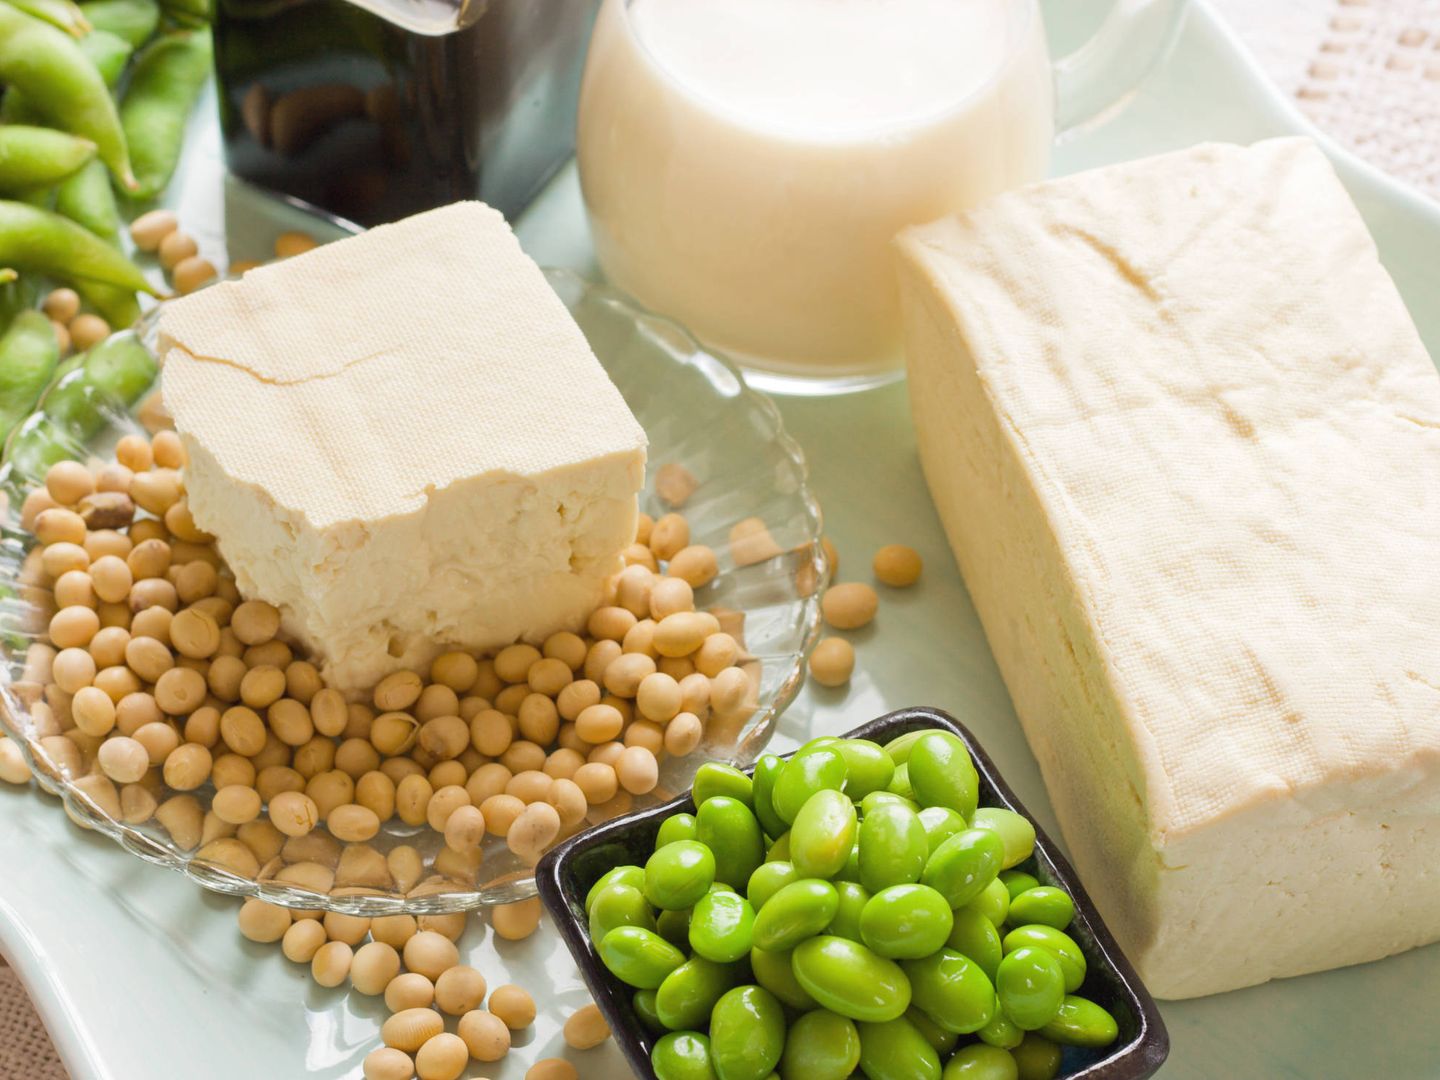 Granos de soja con sus productos derivados como bebida o salsa de soja y tofu. (iStock)